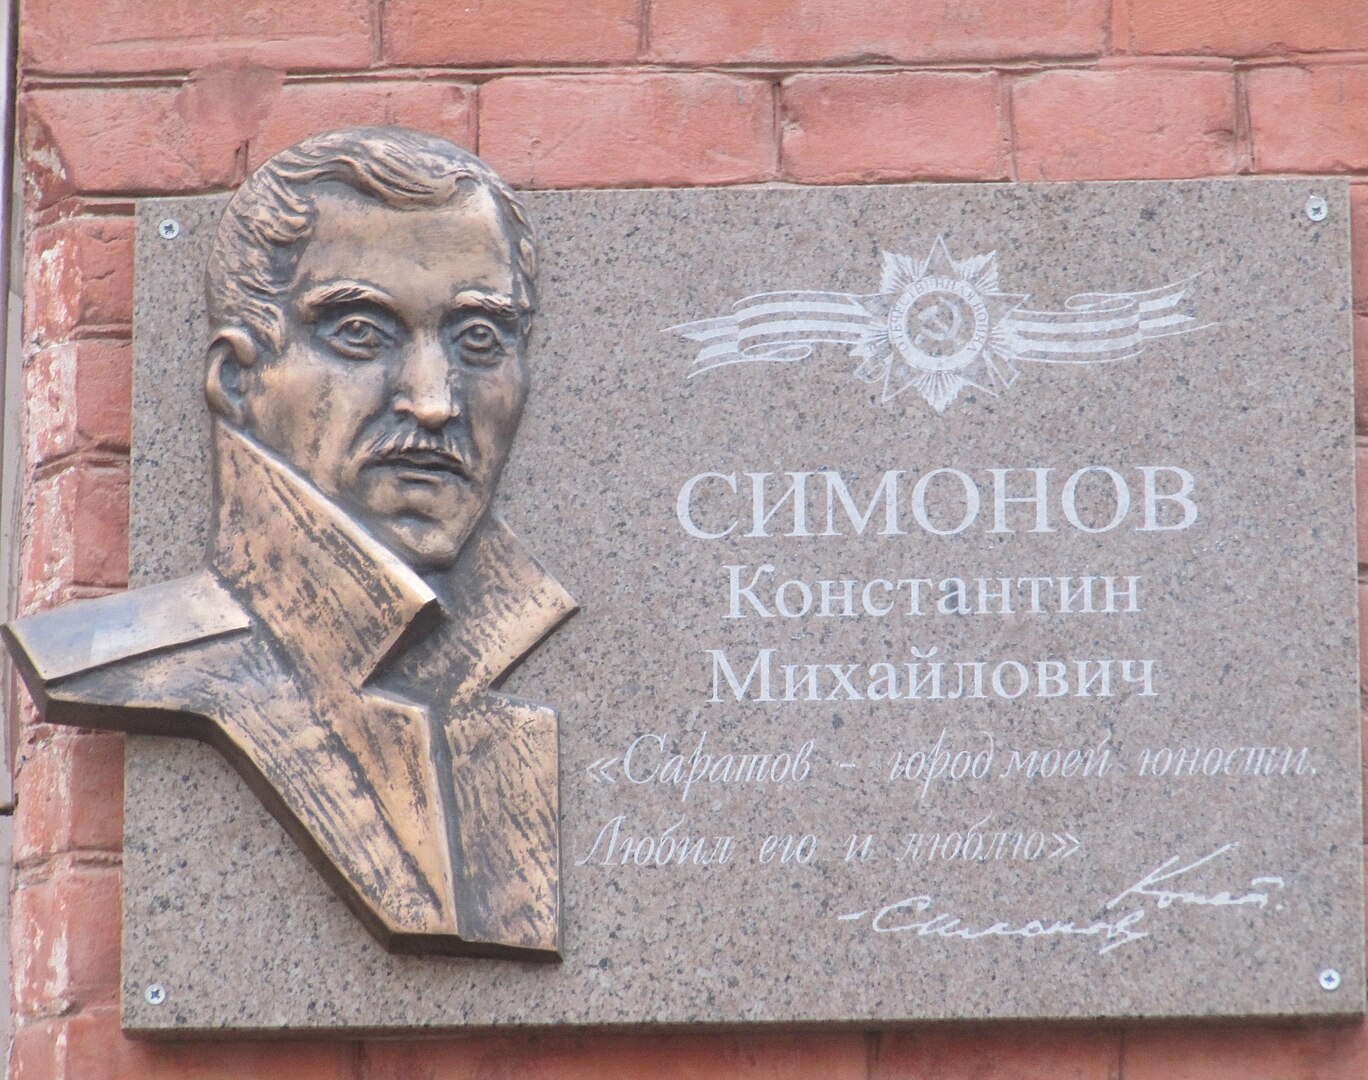 Симонов К.М., памятная плита установлена на ул. Мичурина 86, Саратов, Саратовская область.